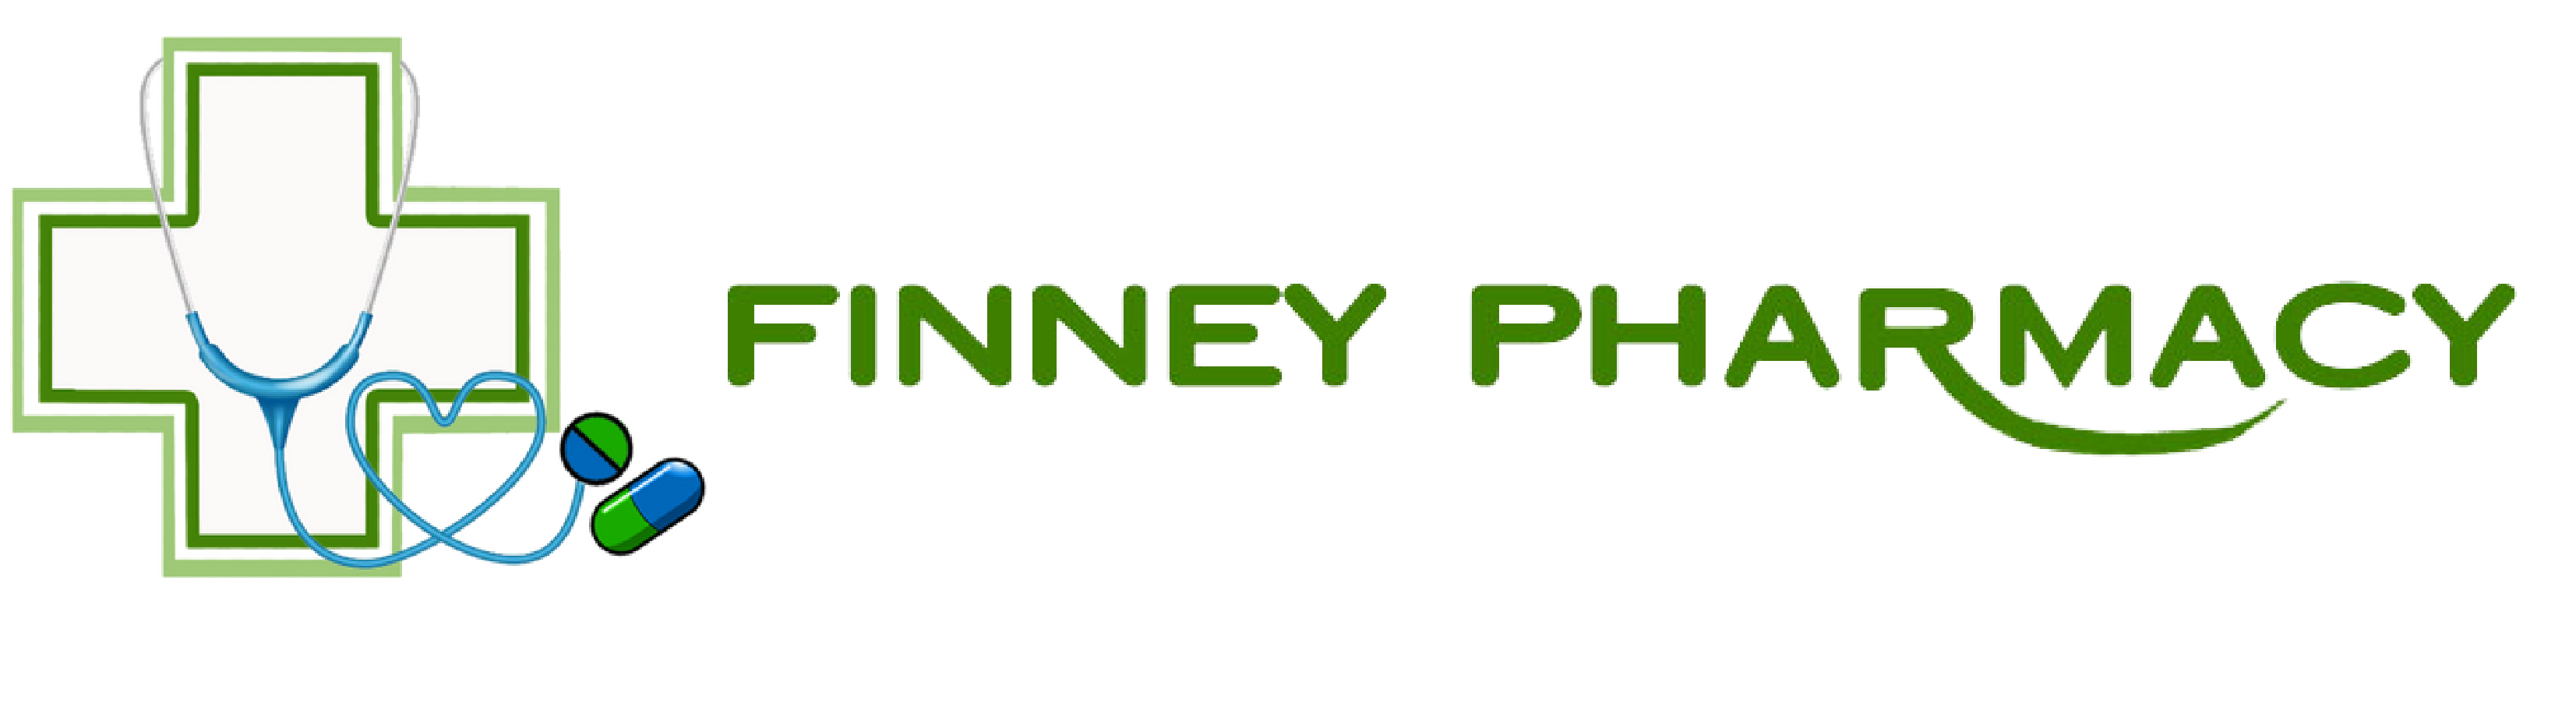 Finney Pharmacy